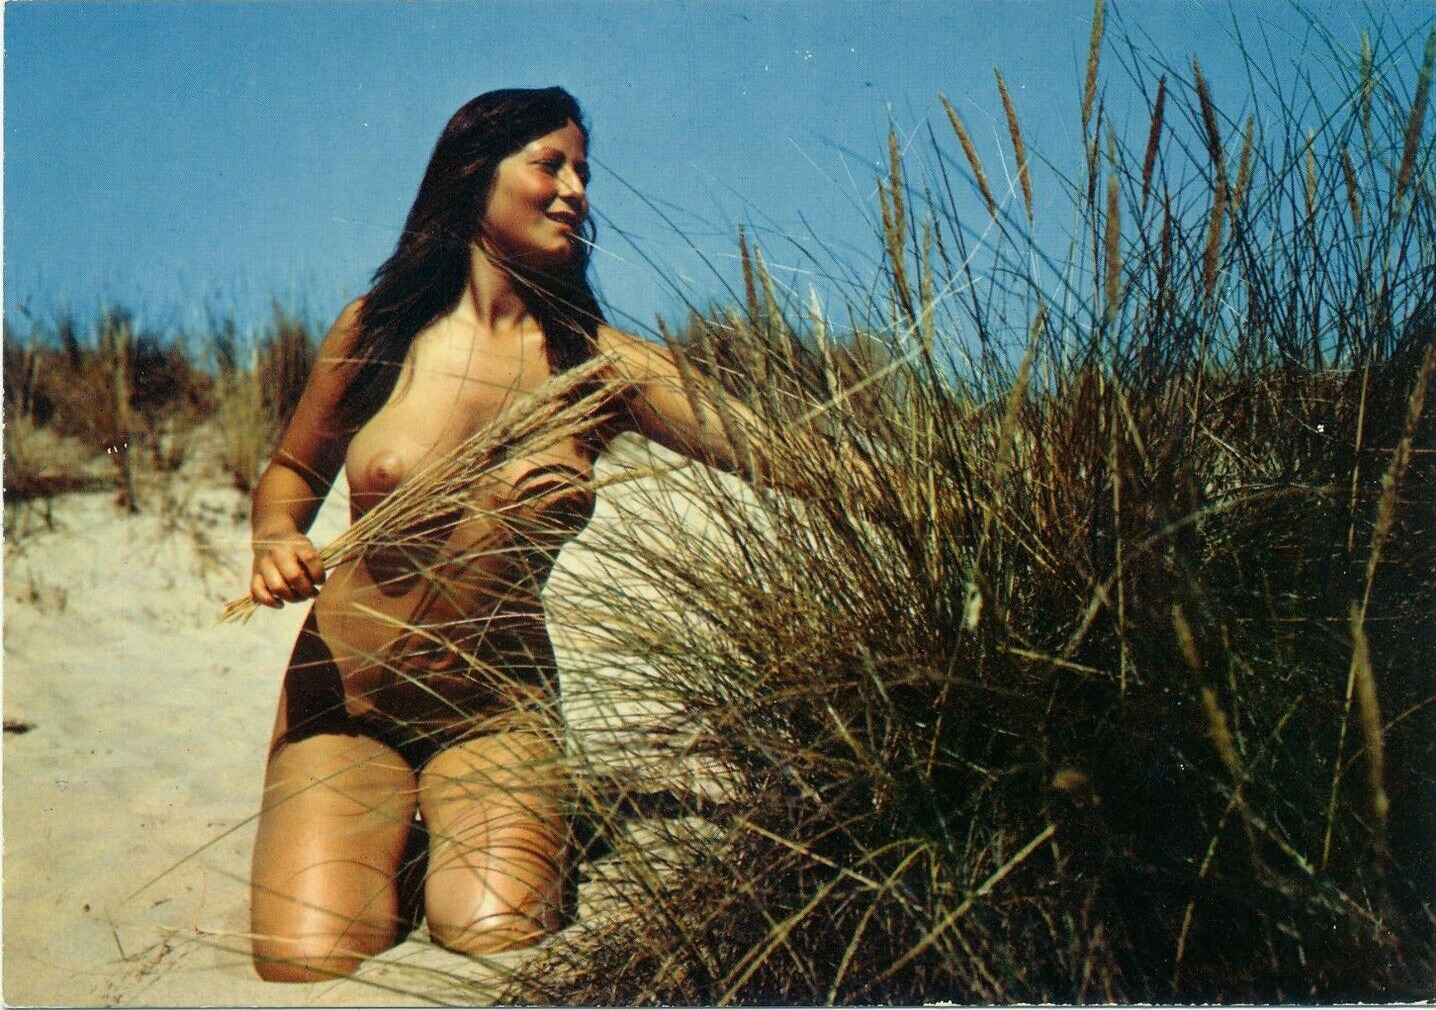 Risque amateur Beauty Nude Woman Vintage Original Real Color Photo-1970s